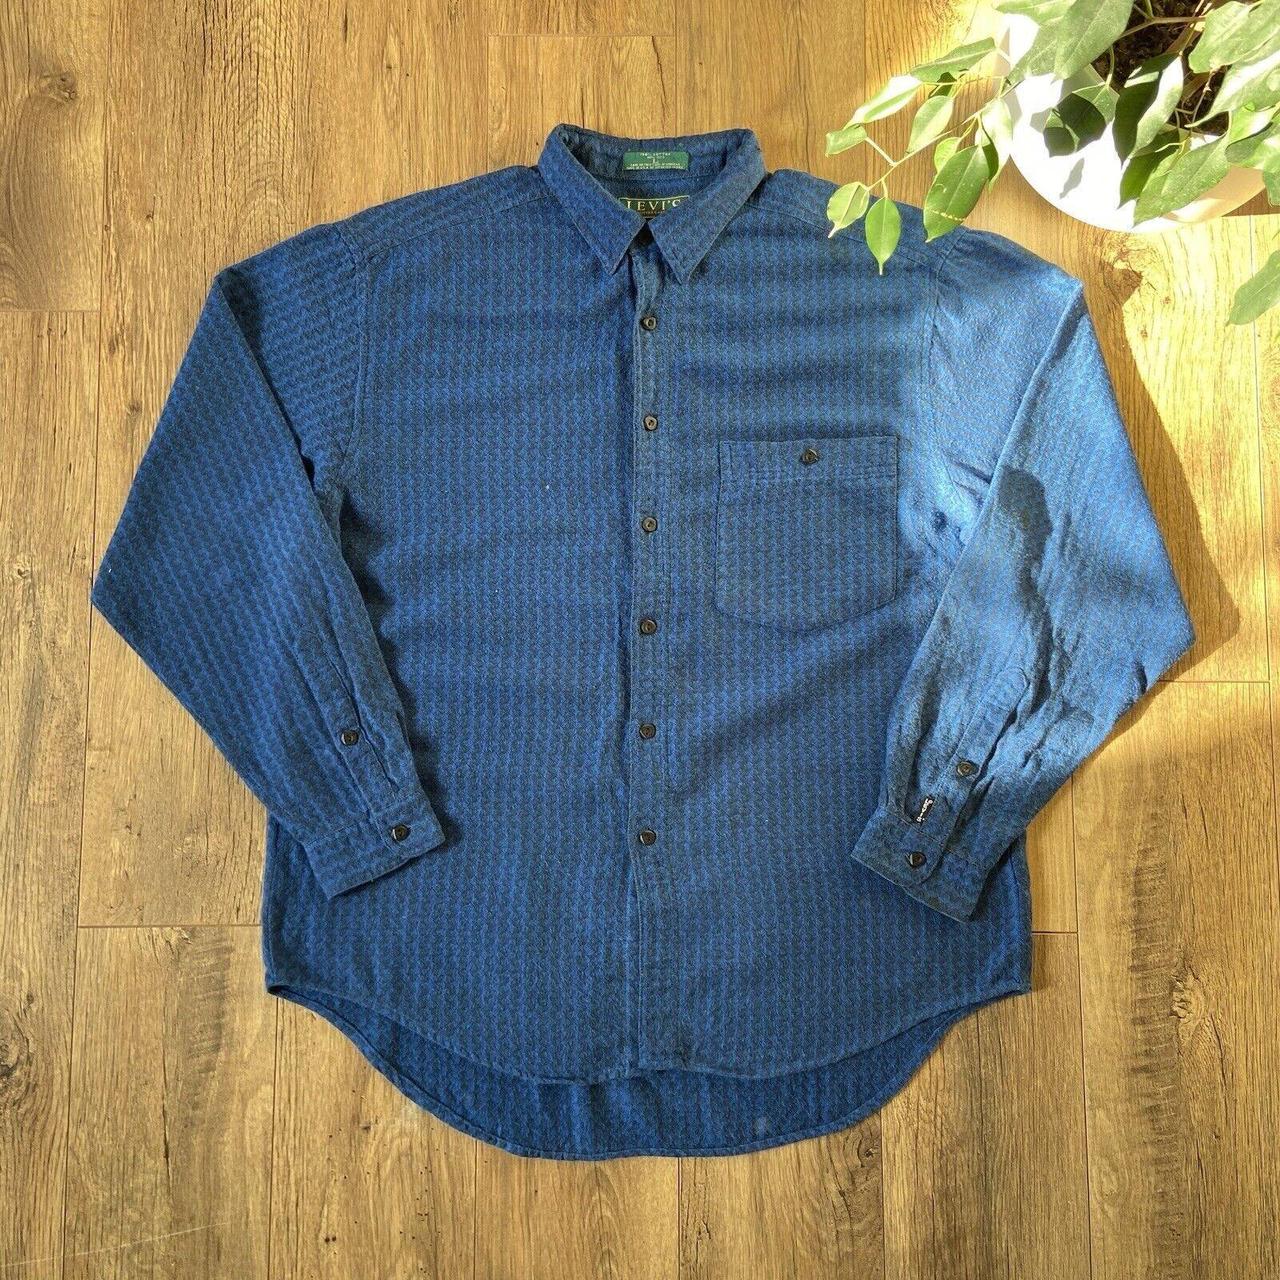 Vintage Levi’s Shirt 80s Size L Blue Heavy Knit... - Depop